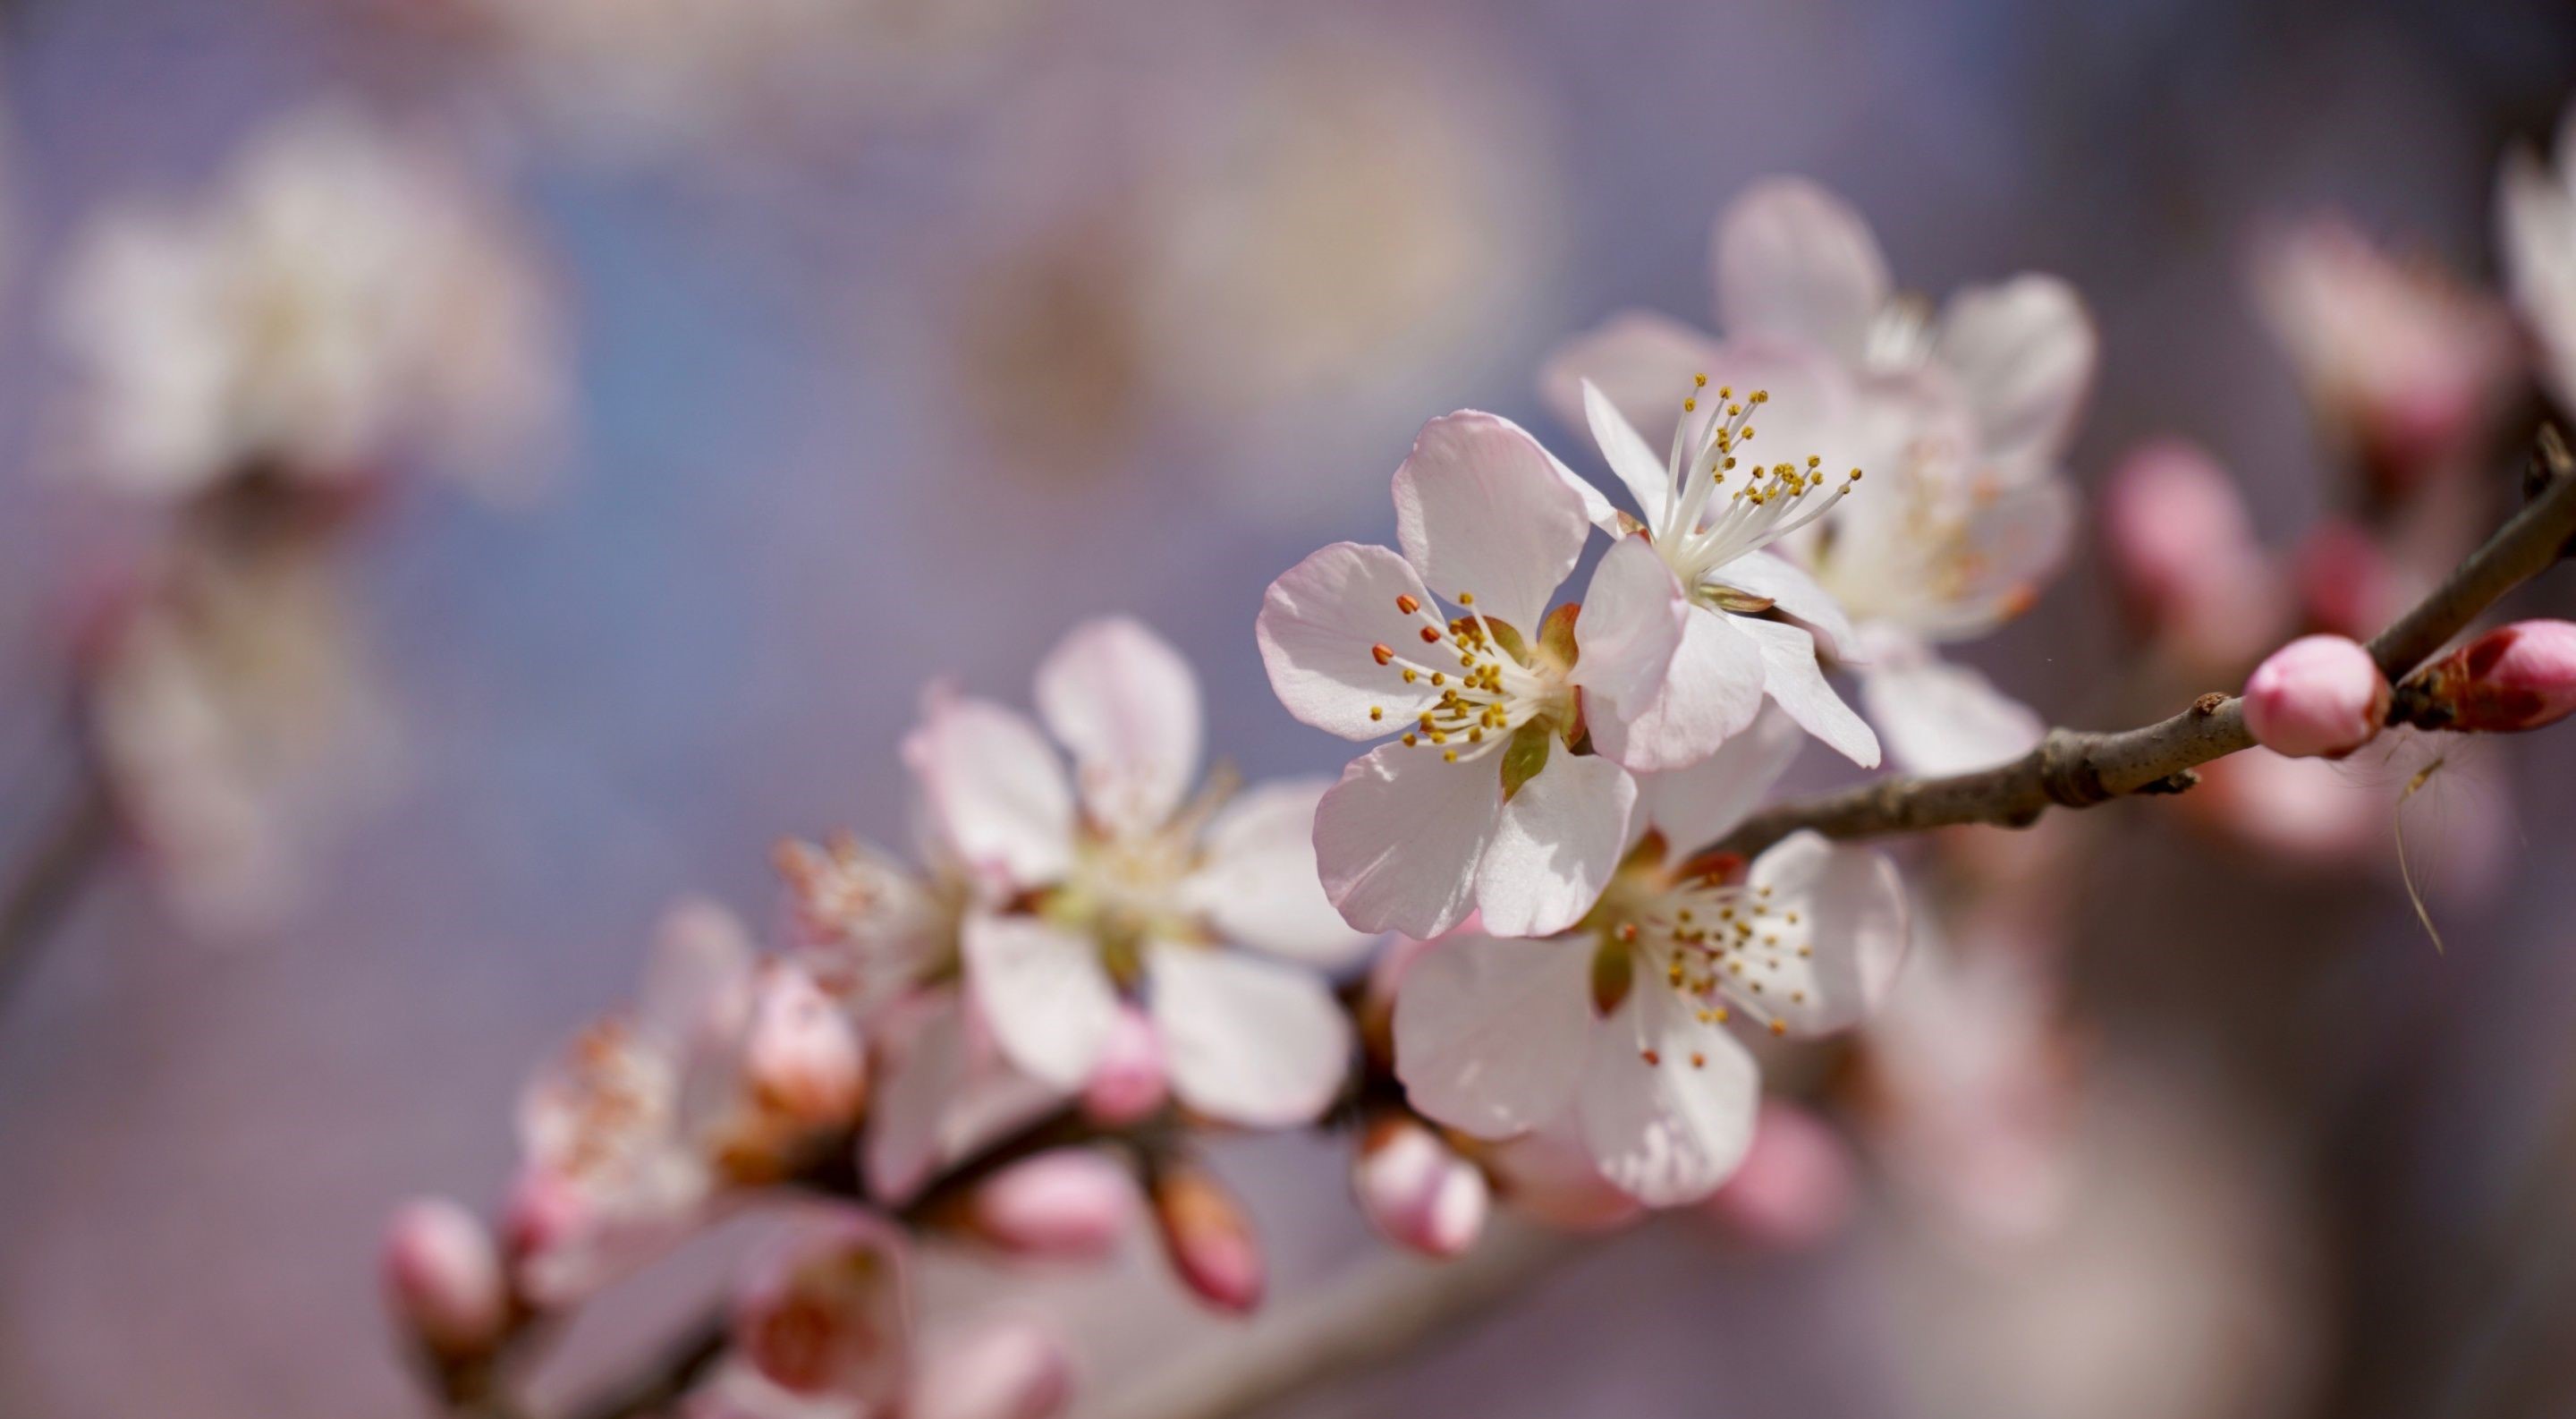 دانلود عکس بسیار زیبا از شکوفه های طبیعی درخت هلو 